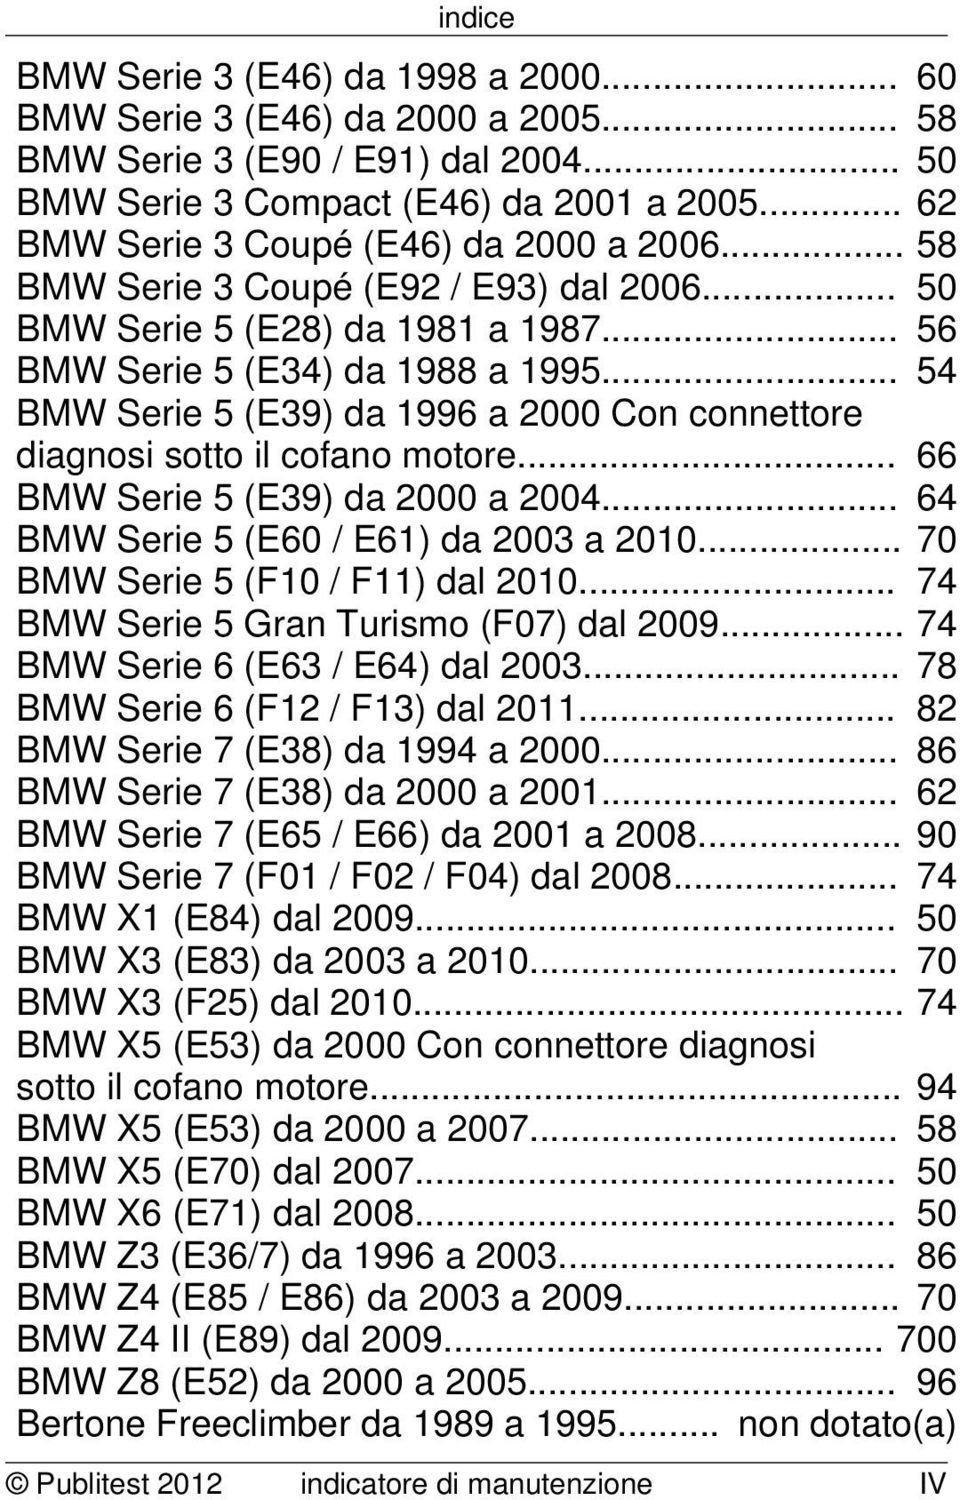 .. 54 BMW Serie 5 (E39) da 1996 a 2000 Con connettore diagnosi sotto il cofano motore... 66 BMW Serie 5 (E39) da 2000 a 2004... 64 BMW Serie 5 (E60 / E61) da 2003 a 2010.